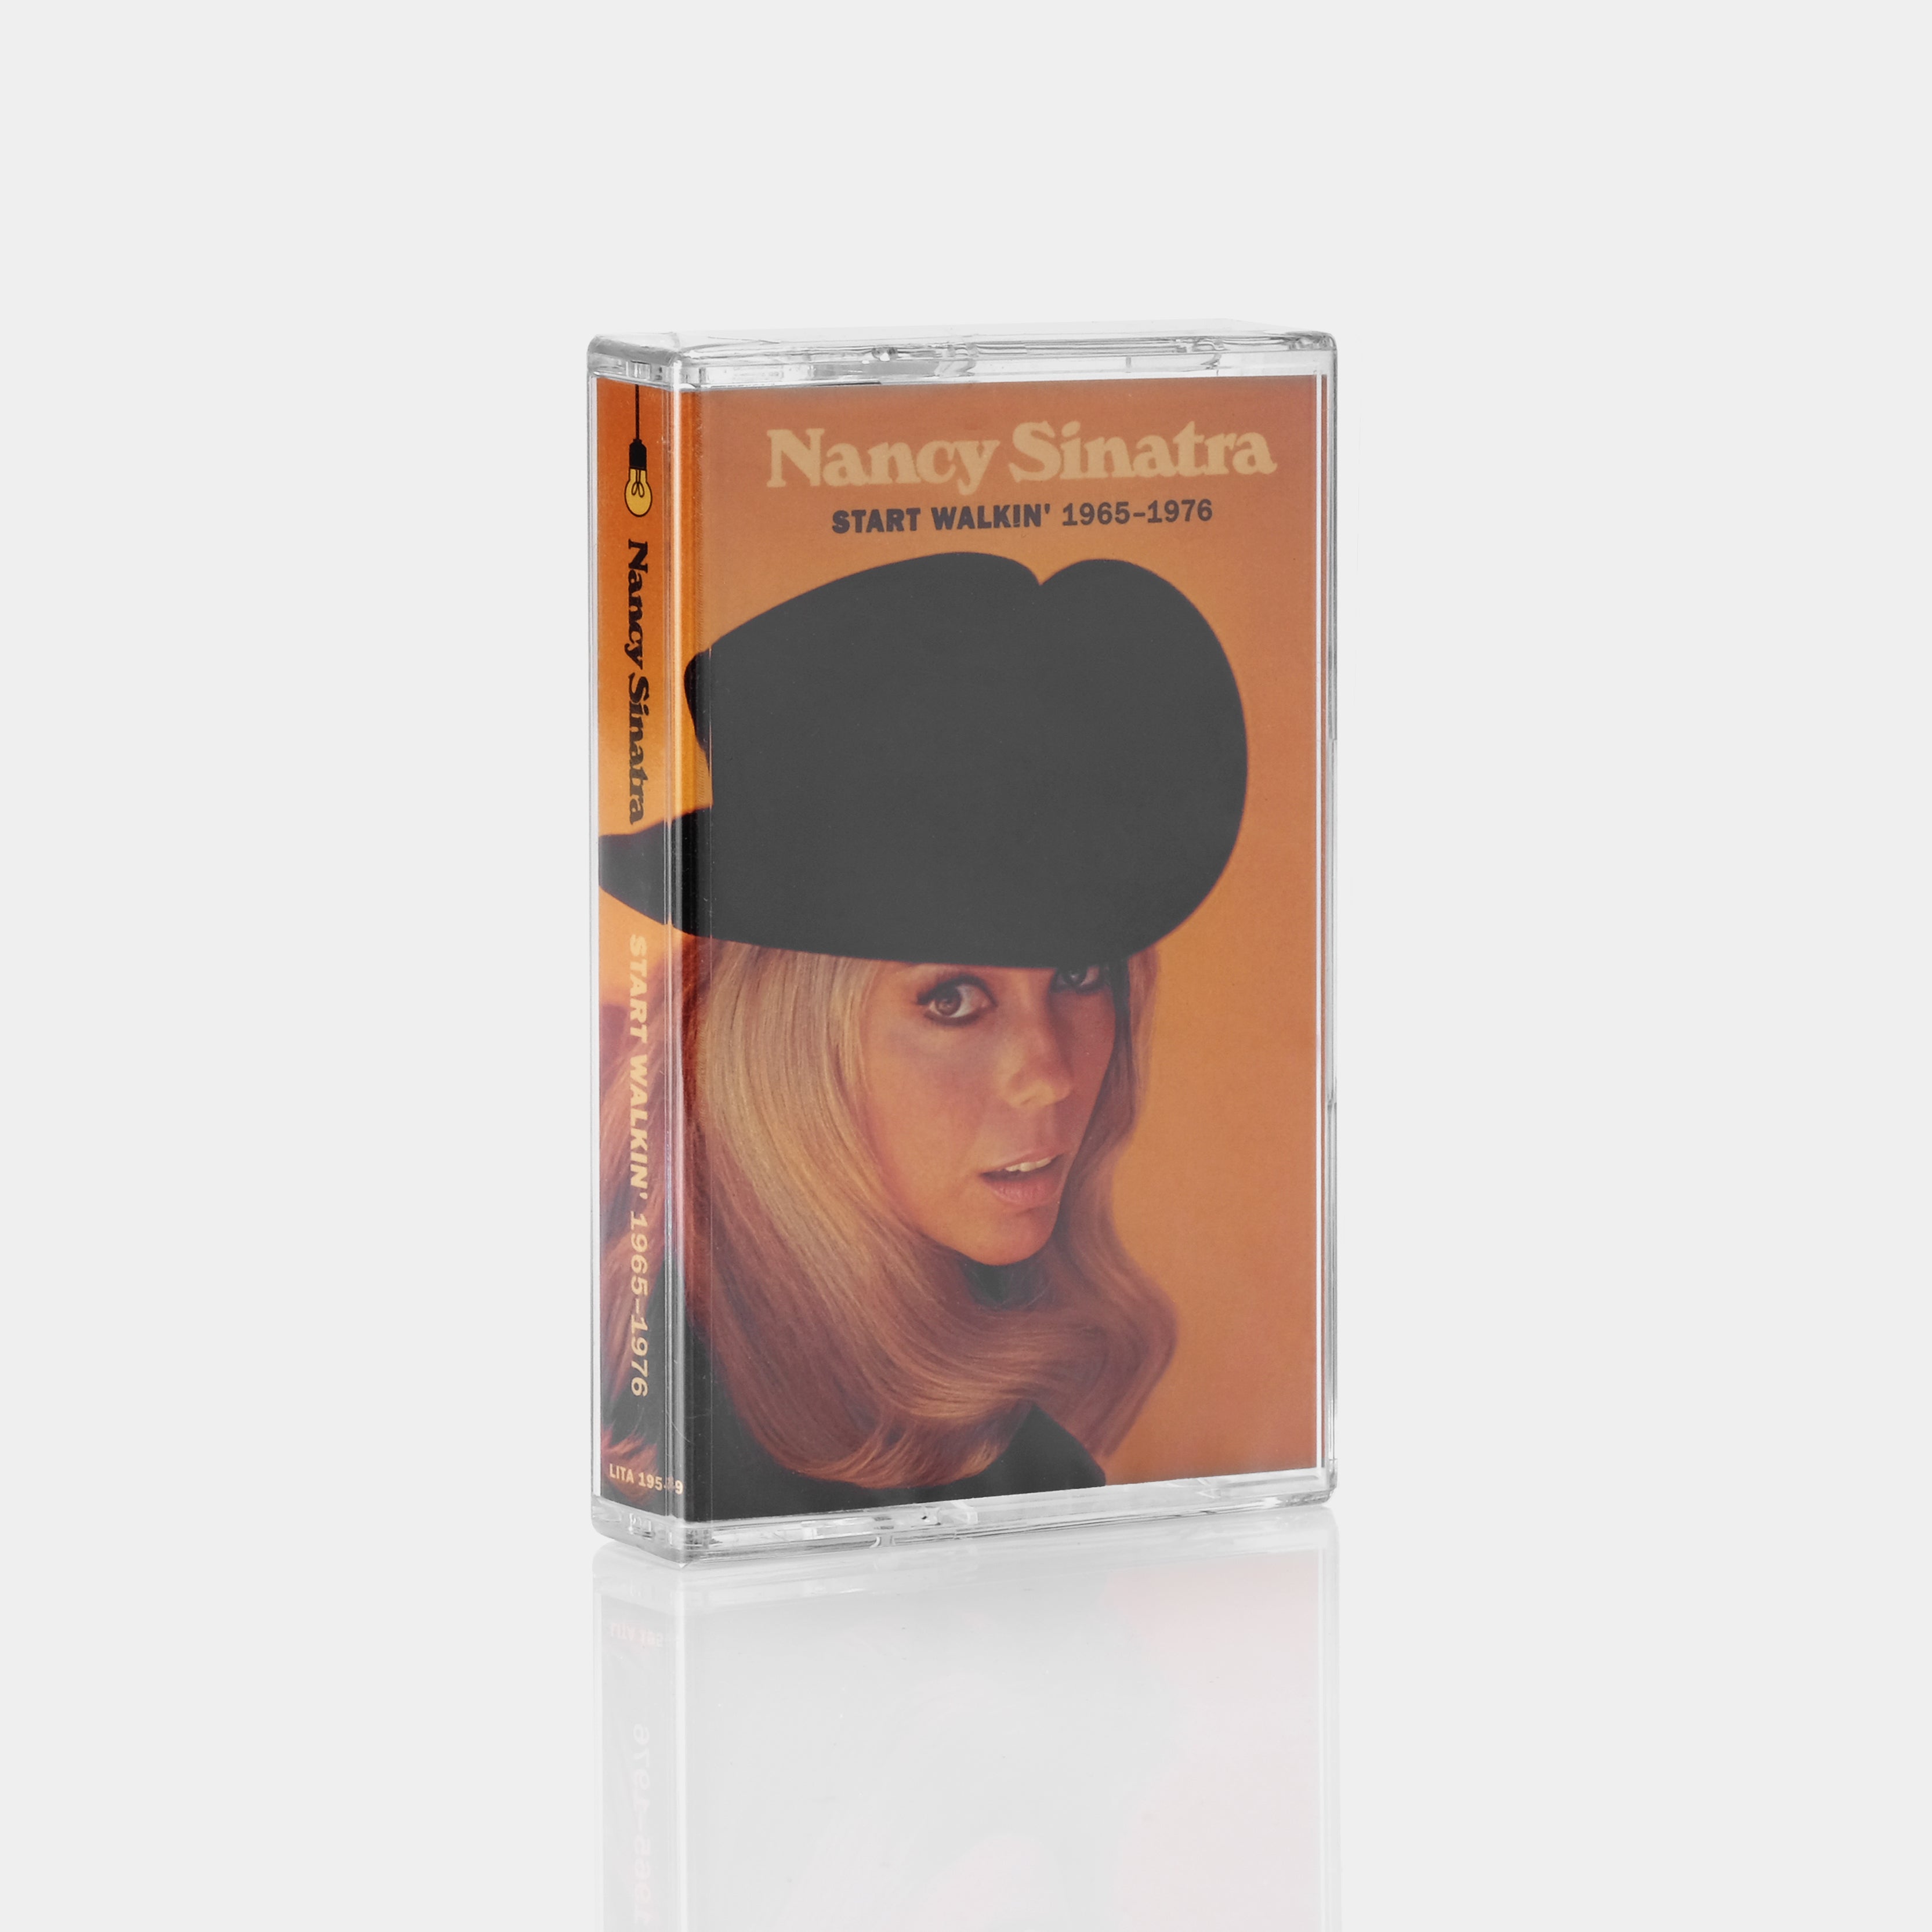 Nancy Sinatra - Start Walkin' 1965-1976 Cassette Tape